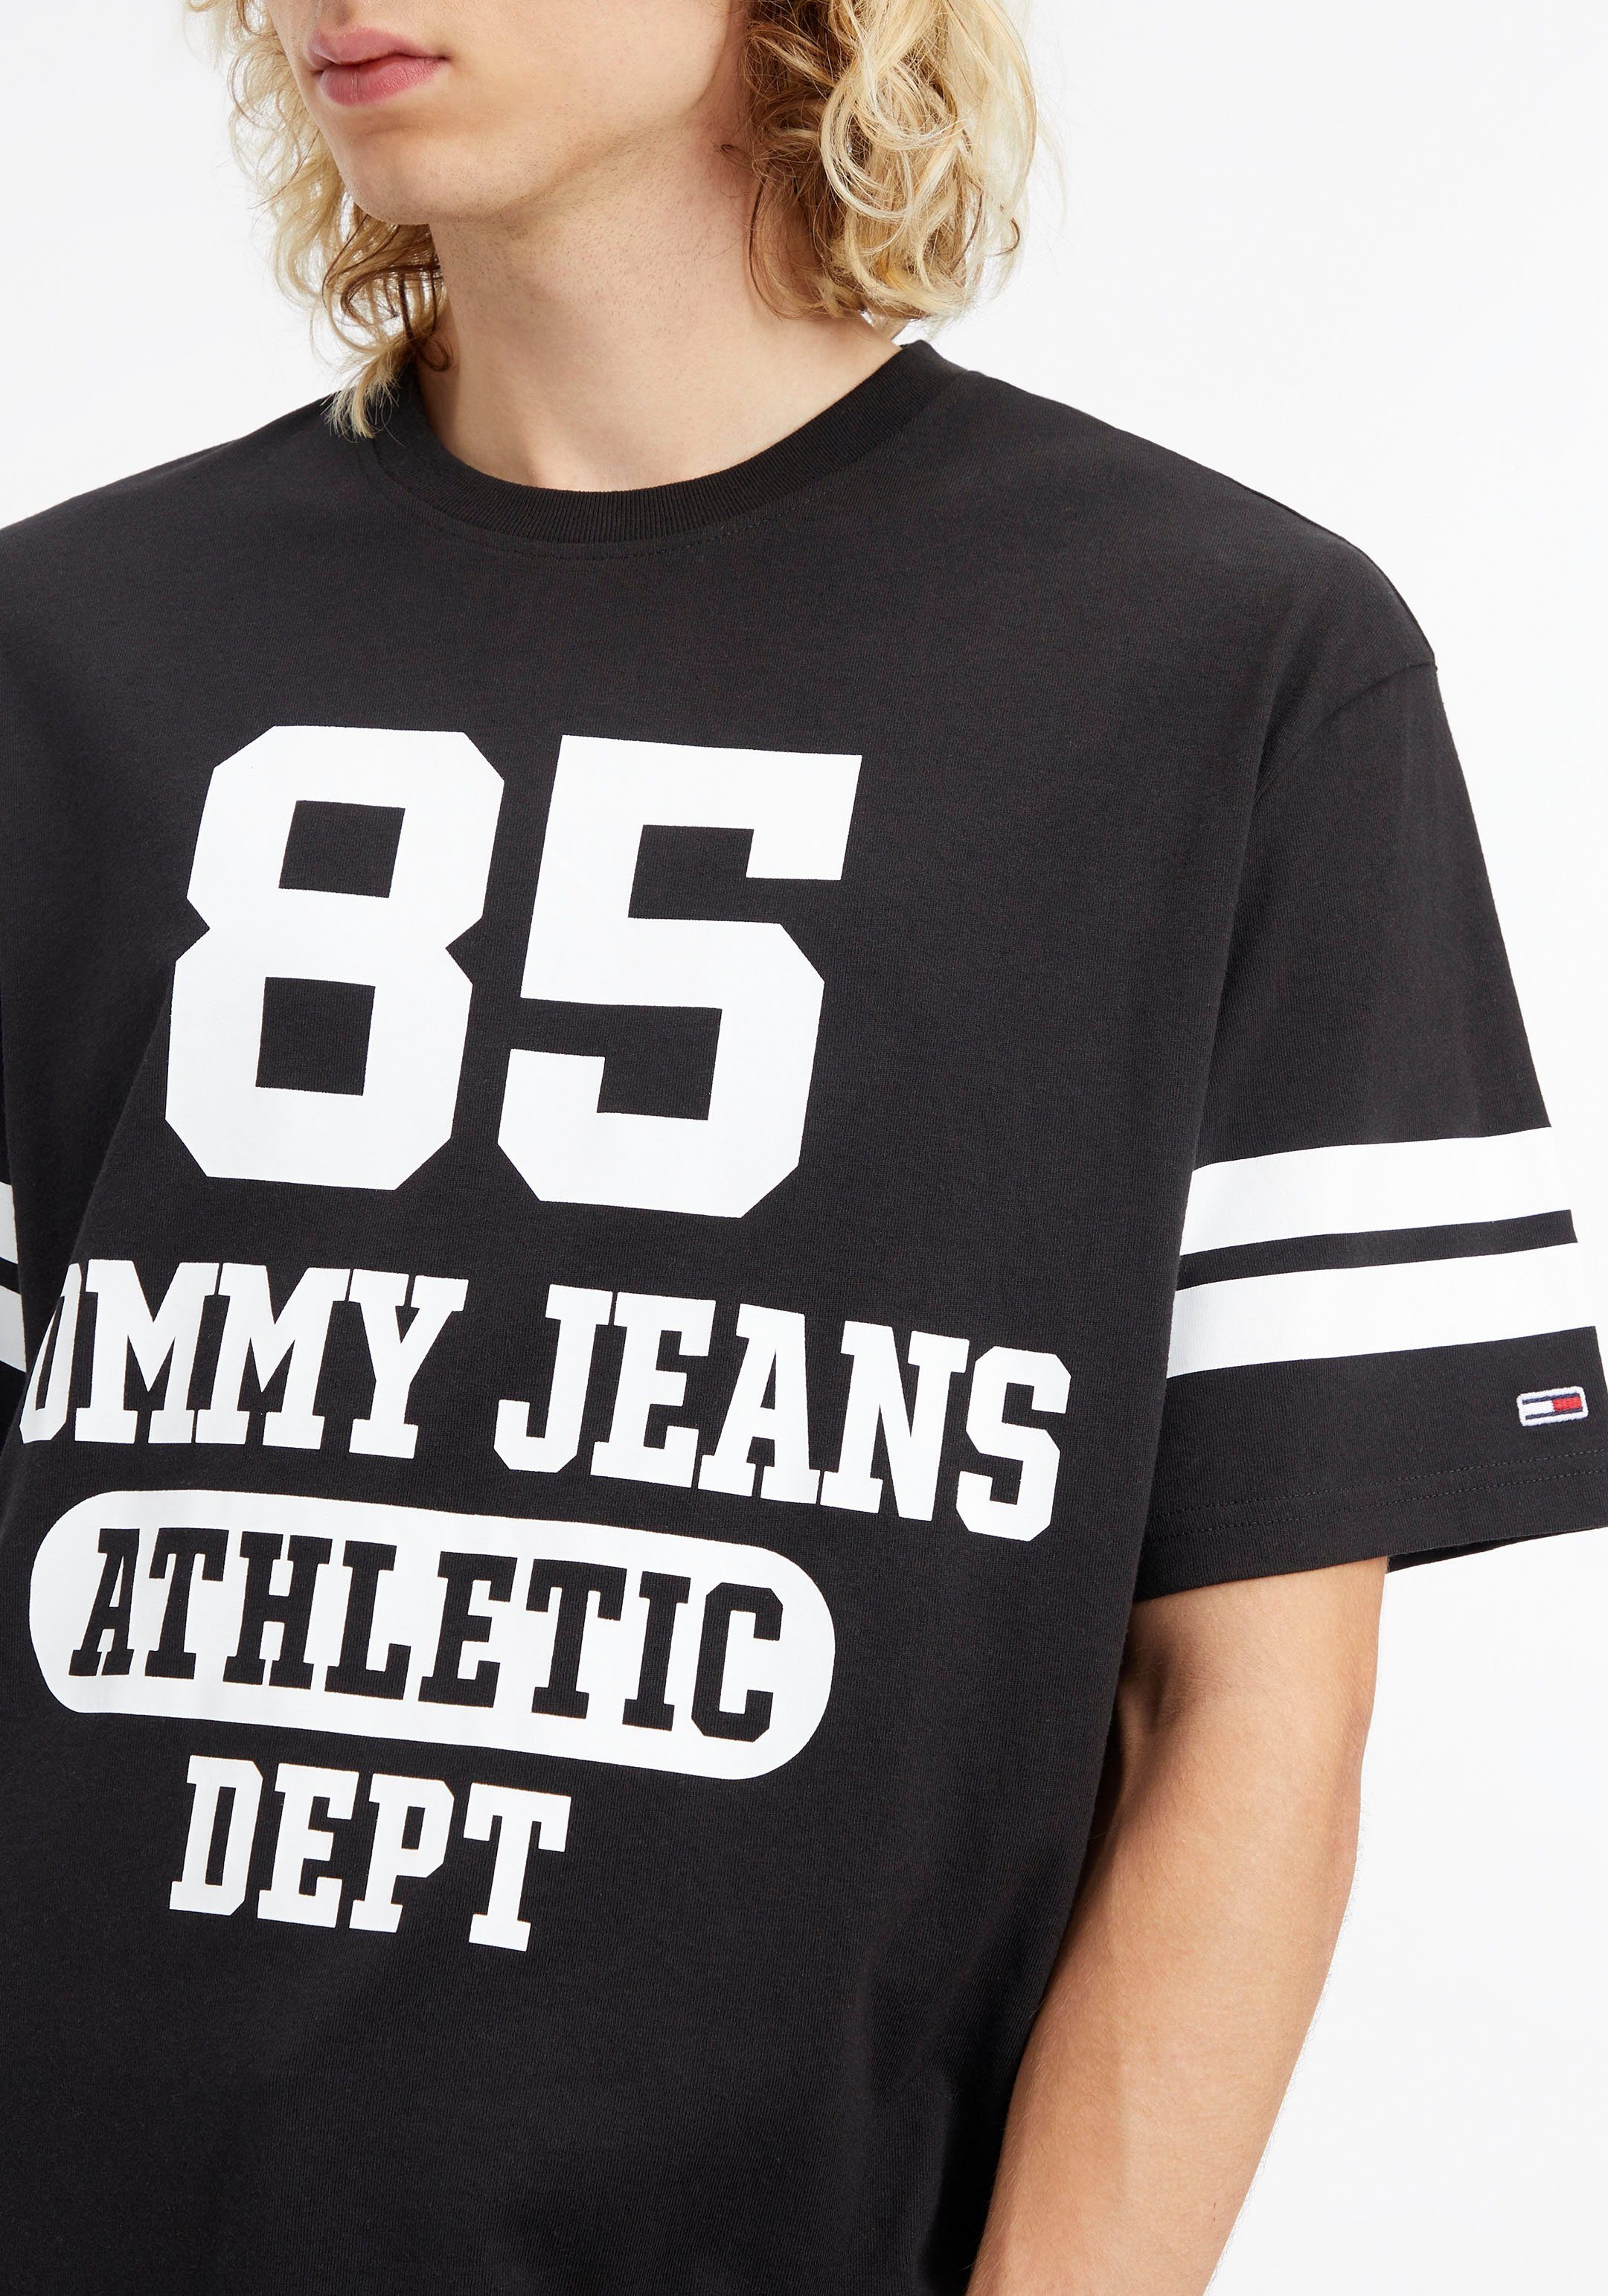 TJM COLLEGE T-Shirt Jeans SKATER Black 85 Tommy LOGO